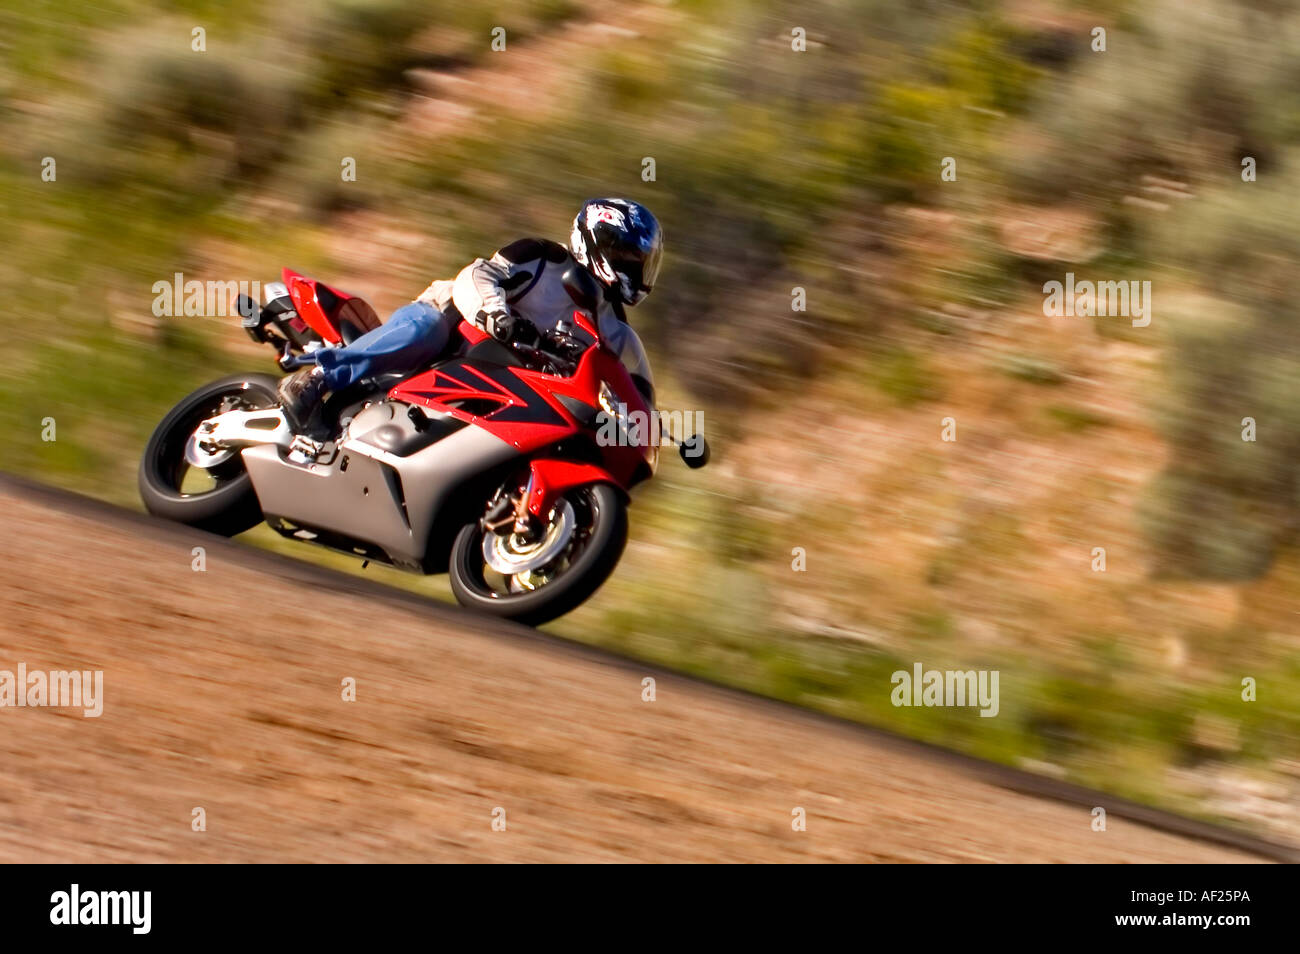 Bullet sport bike coins dans un canyon aux roches rouges dans l'arrière-plan dans ce coup avec beaucoup de flou de mouvement Banque D'Images